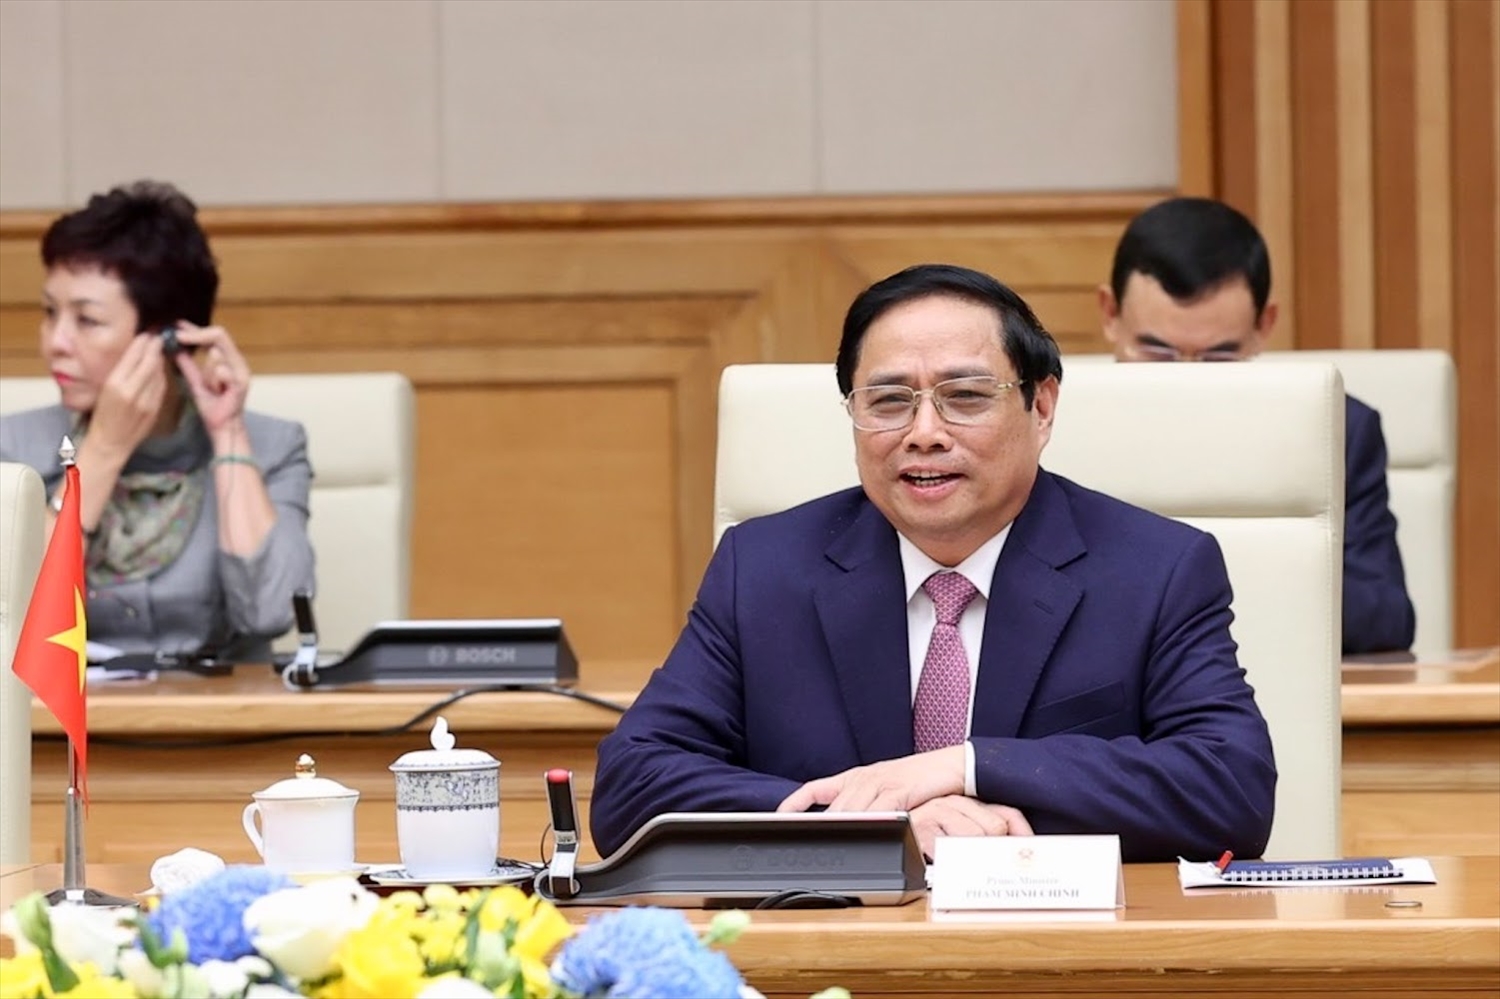 Tại buổi tiếp, Thủ tướng Phạm Minh Chính chân thành cảm ơn những đóng góp, hỗ trợ quý báu của LHQ dành cho Việt Nam - Ảnh: VGP/Nhật Bắc